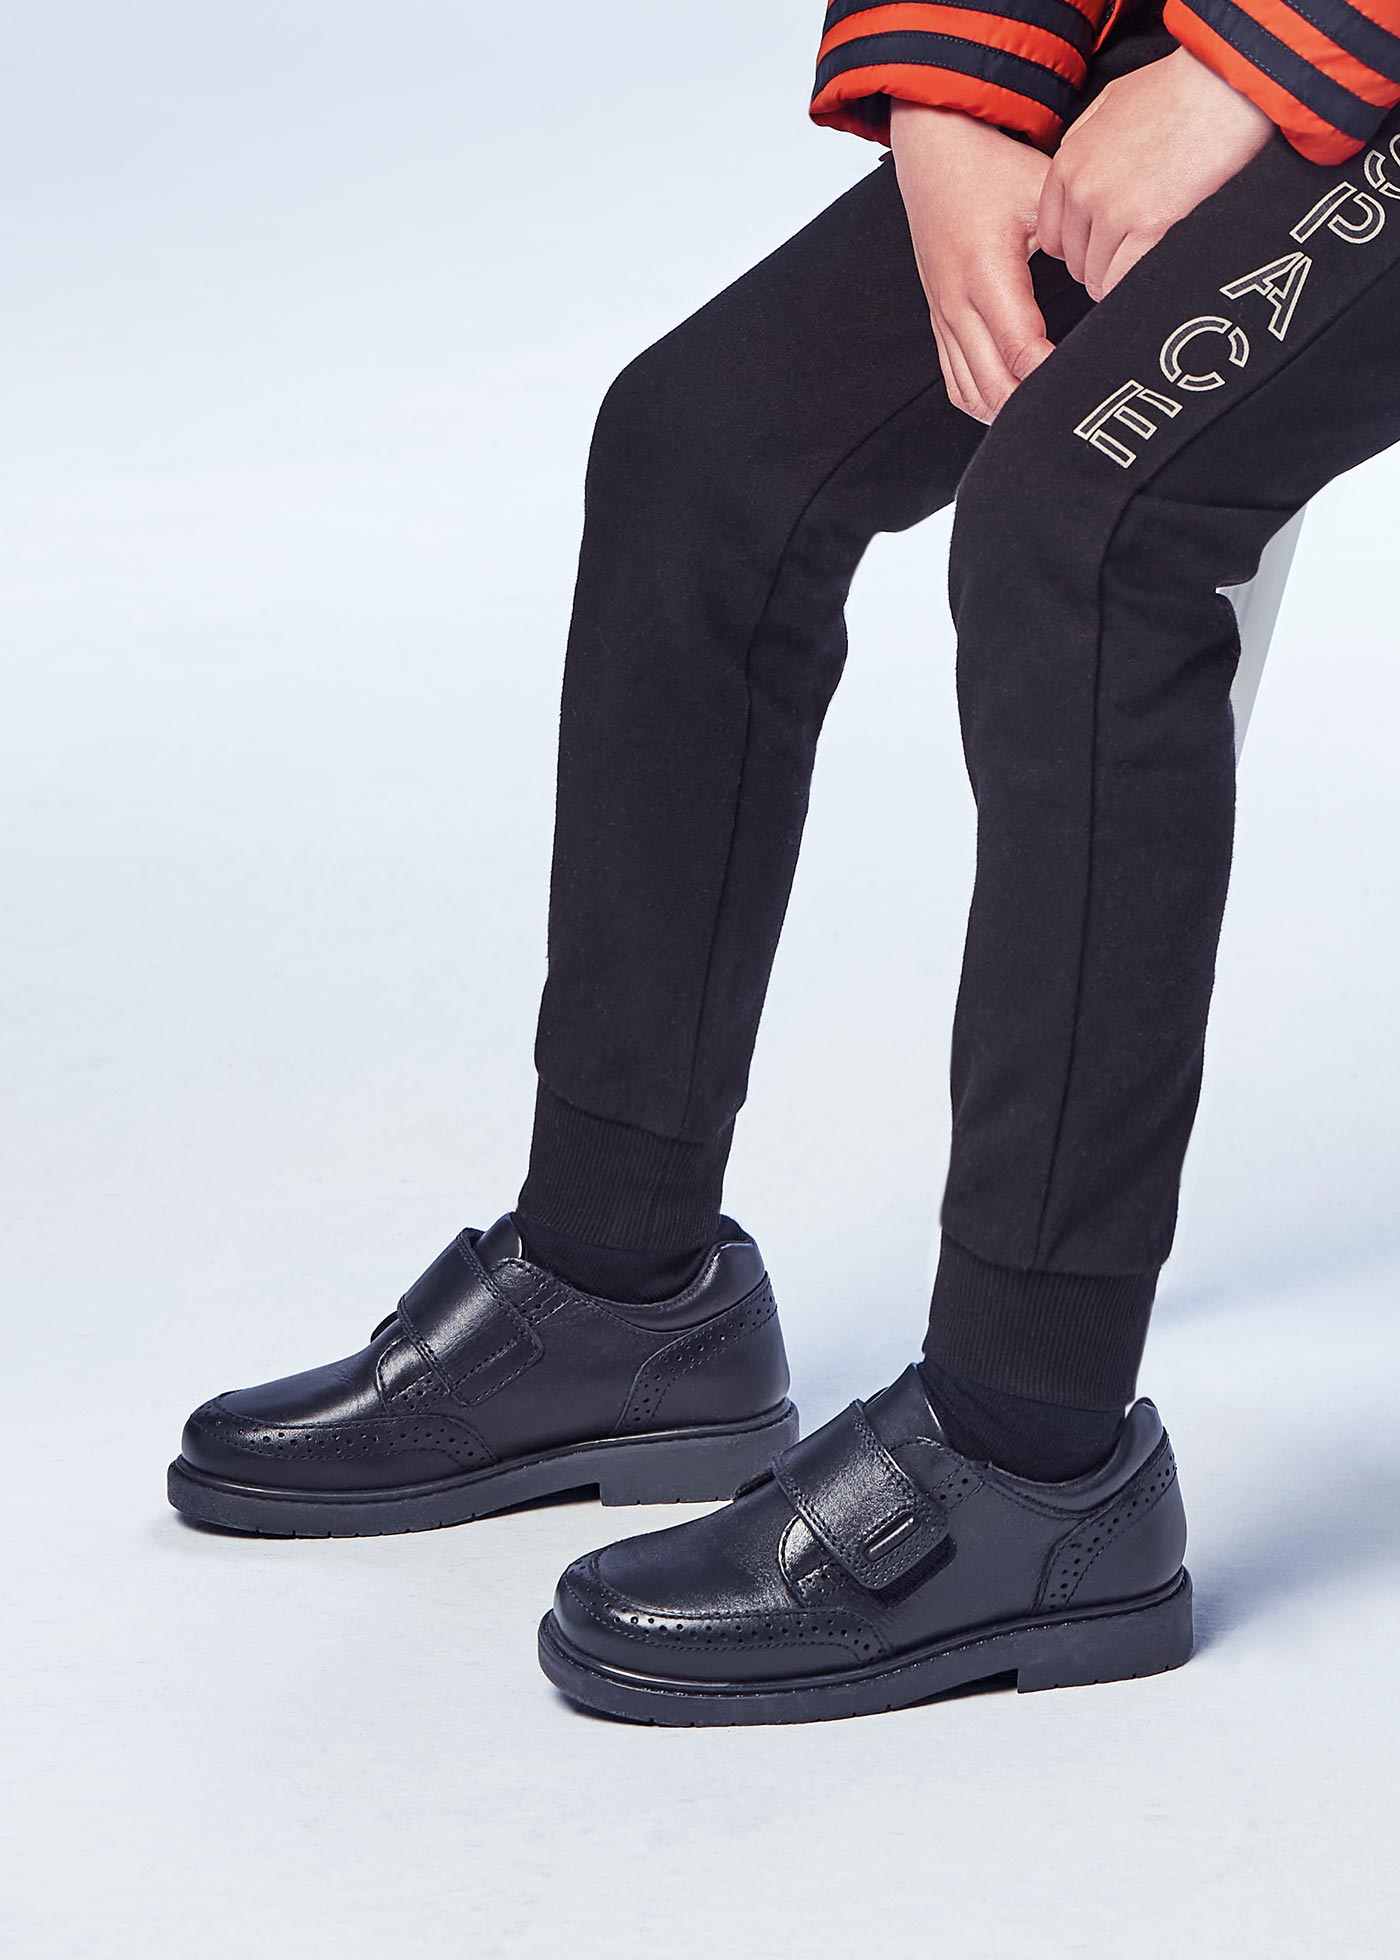 Boy leather uniform shoes